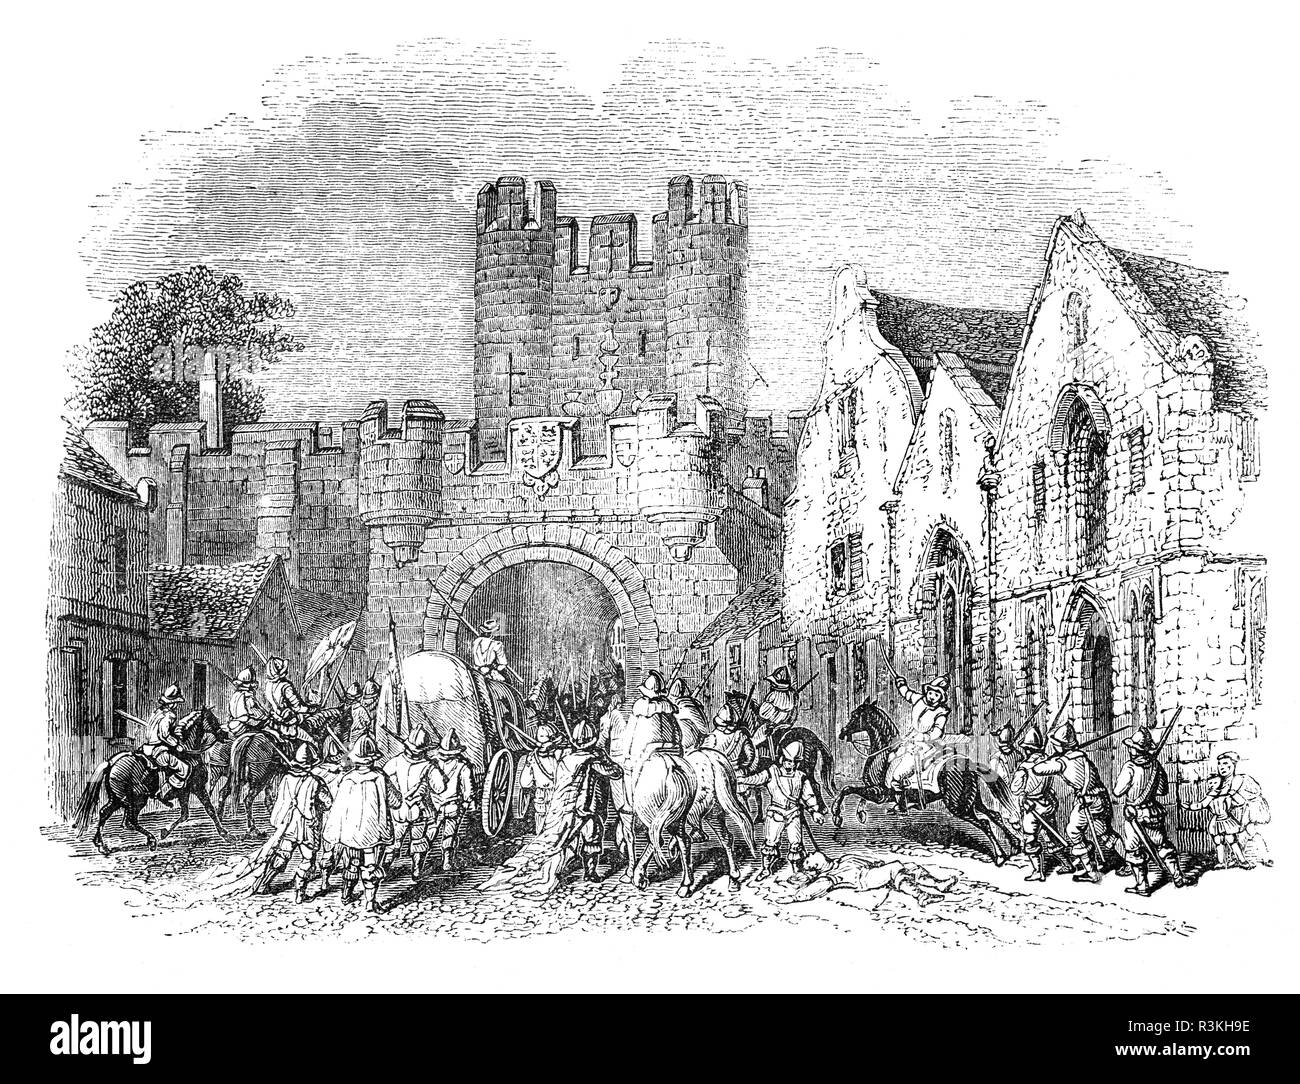 Die Micklebar Tor, Micklegate Straße am südlichen Eingang der Stadt York, England. Der Name bedeutet so viel wie "Große Straße', 'Gate' aus dem Altnordischen gata, oder die Straße. Der untere Abschnitt wurde im 12. Jahrhundert erbaut und die oberen Geschichten aus dem 14. Jahrhundert. Nach der Schlacht von Wakefield während der Kriege der Rosen, die Köpfe von Richard Plantagenet, 3. Herzog von York (Vater von Edward IV und Richard III.), Edmund, Earl of Rutland (ein weiterer Sohn von Richard) und Richard Neville, 5. Earl of Salisbury an Micklegate Bar angezeigt wurden. Stockfoto